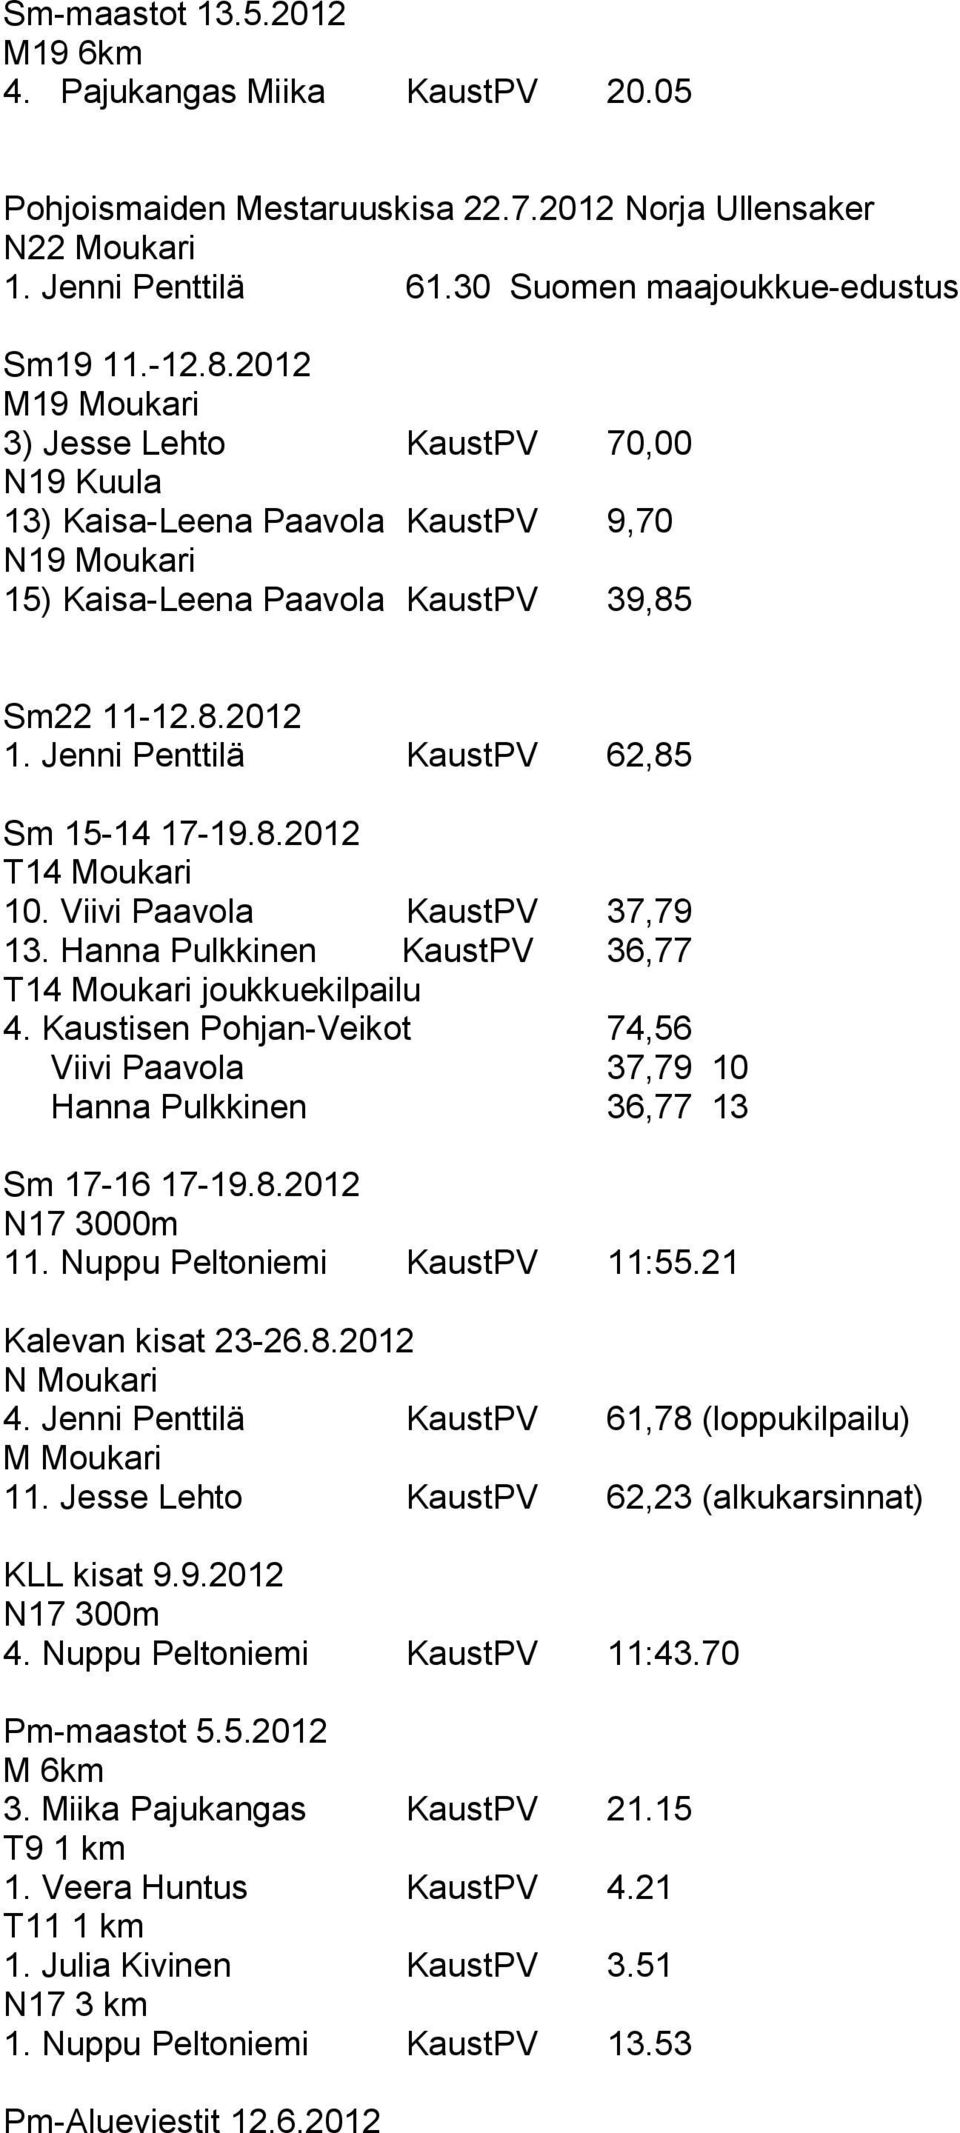 Jenni Penttilä KaustPV 62,85 Sm 15-14 17-19.8.2012 T14 Moukari 10. Viivi Paavola KaustPV 37,79 13. Hanna Pulkkinen KaustPV 36,77 T14 Moukari joukkuekilpailu 4.